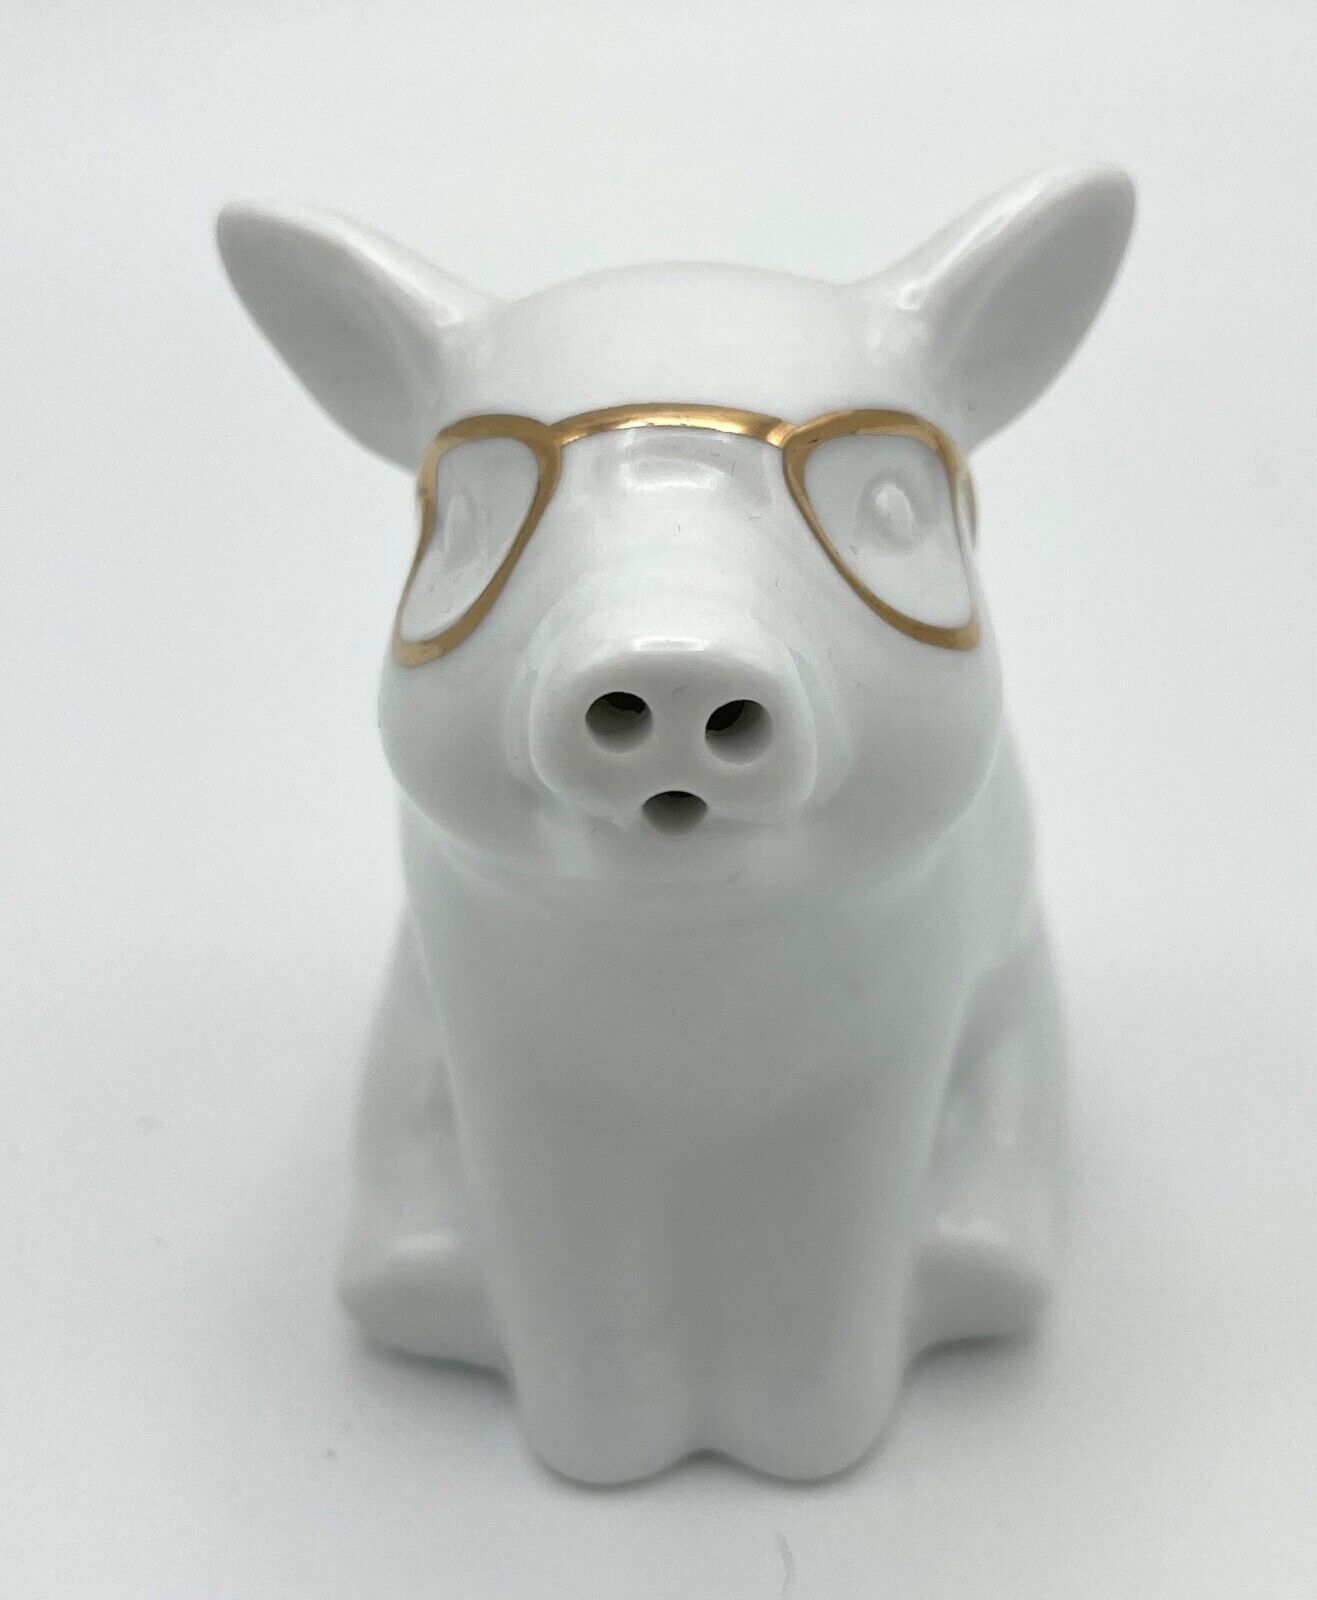 TARGET Threshold Ceramic Pig White With Gold Glasses Salt or Pepper Shaker